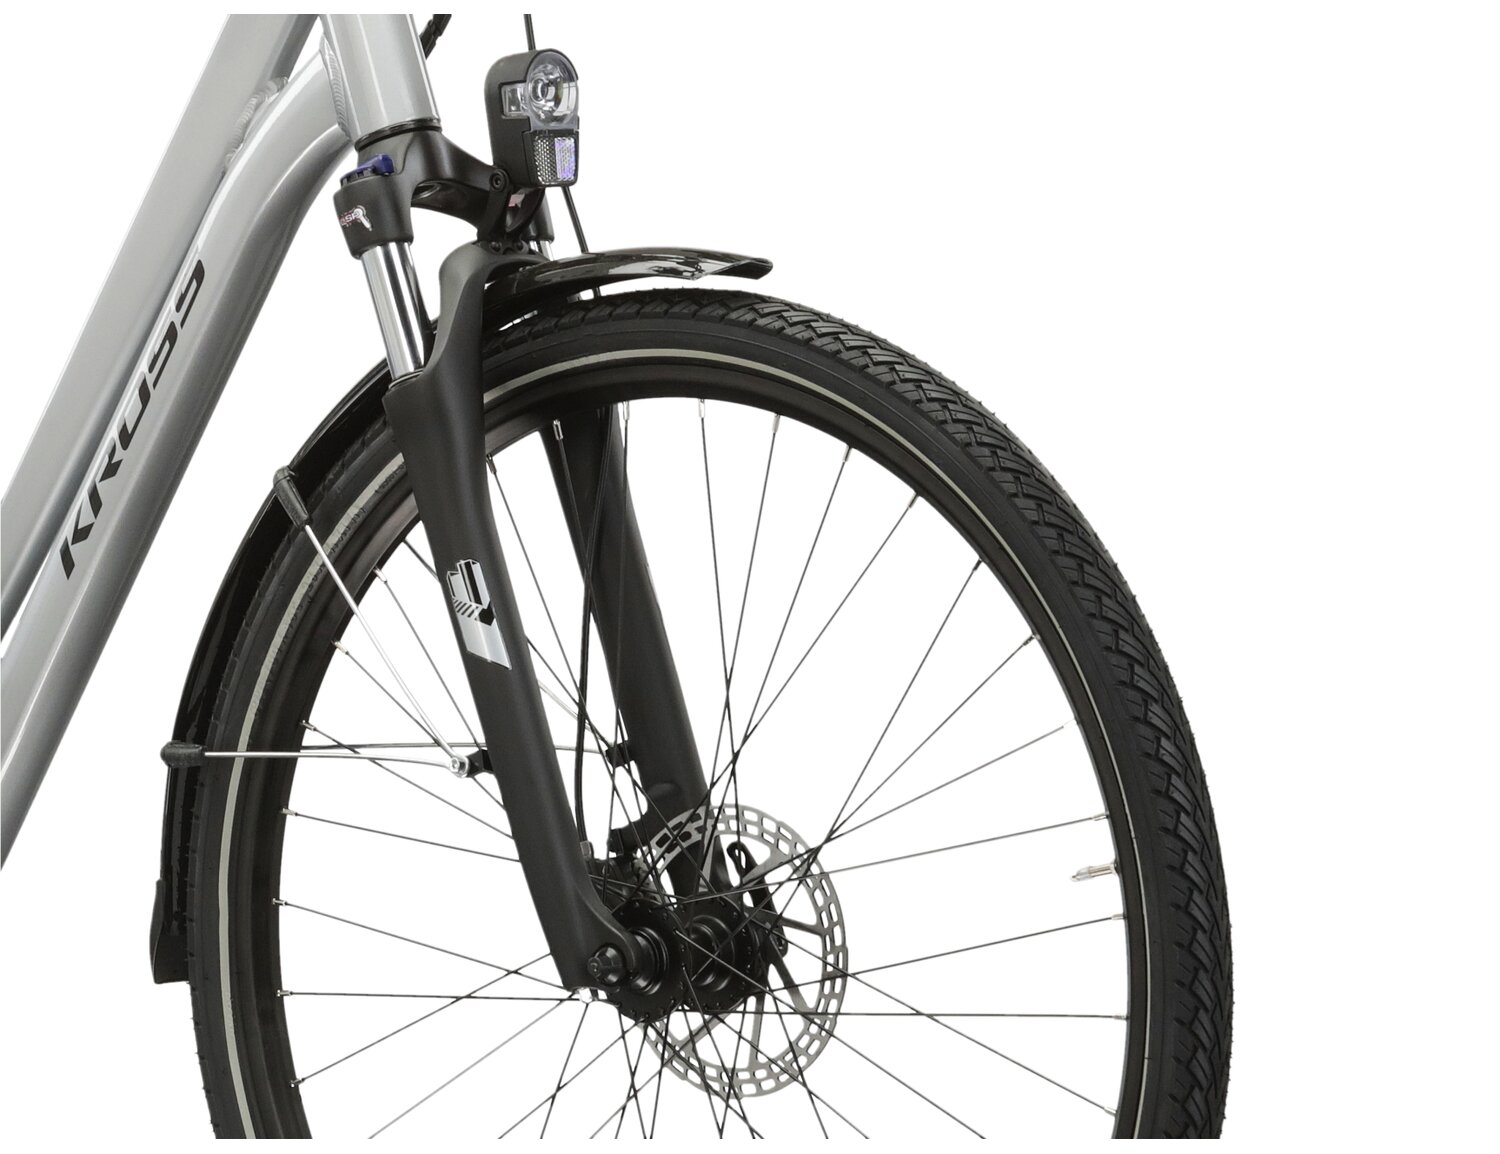 Aluminowa rama, amortyzowany widelec SR SUNTOUR NEX HLO o skoku 63mm oraz opony w elektrycznym rowerze miejskim Ebike City KROSS Sentio Hybrid 2.0 504 Wh 